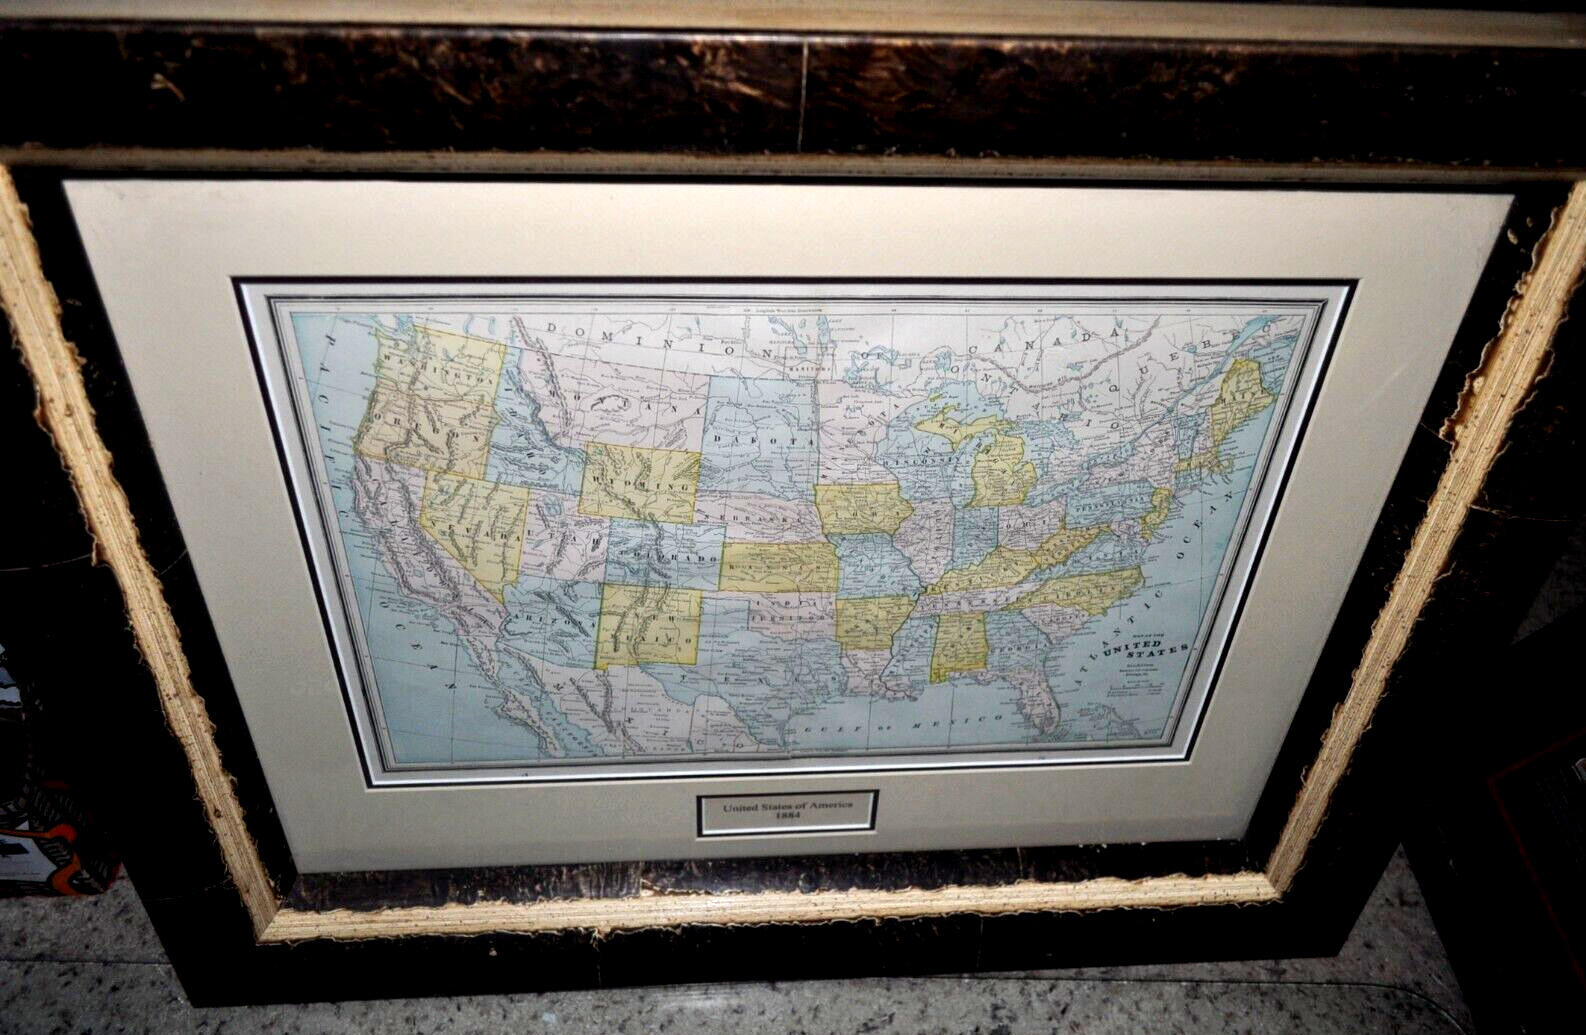 Original Antique United States Map 1884 George F. Cram Engraver in Roma Frame